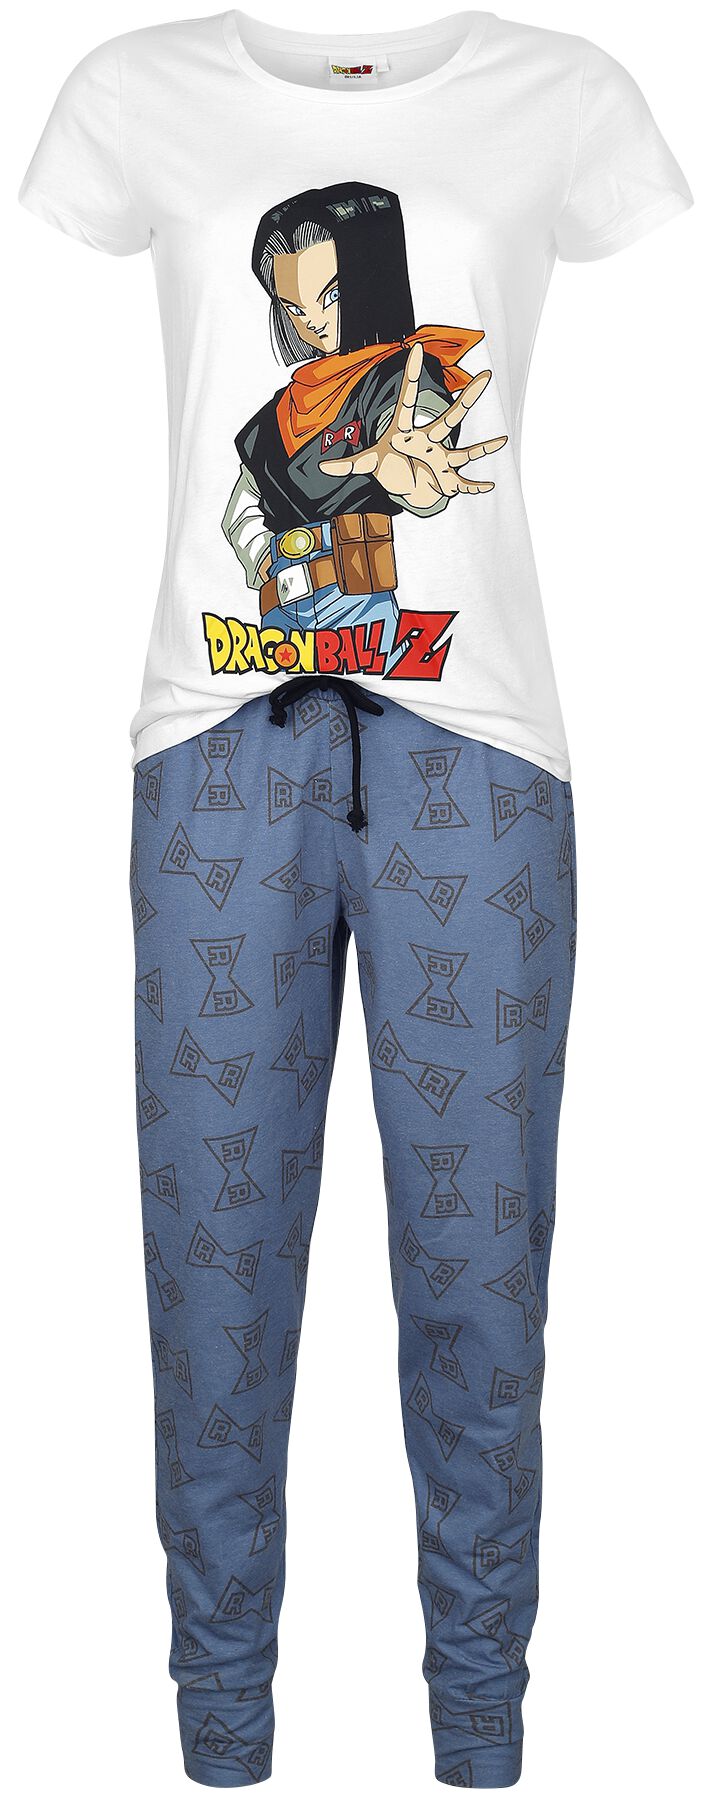 Dragon Ball - Gaming Schlafanzug - Z - Android 17 - S bis 3XL - für Damen - Größe M - weiß/blau  - EMP exklusives Merchandise!